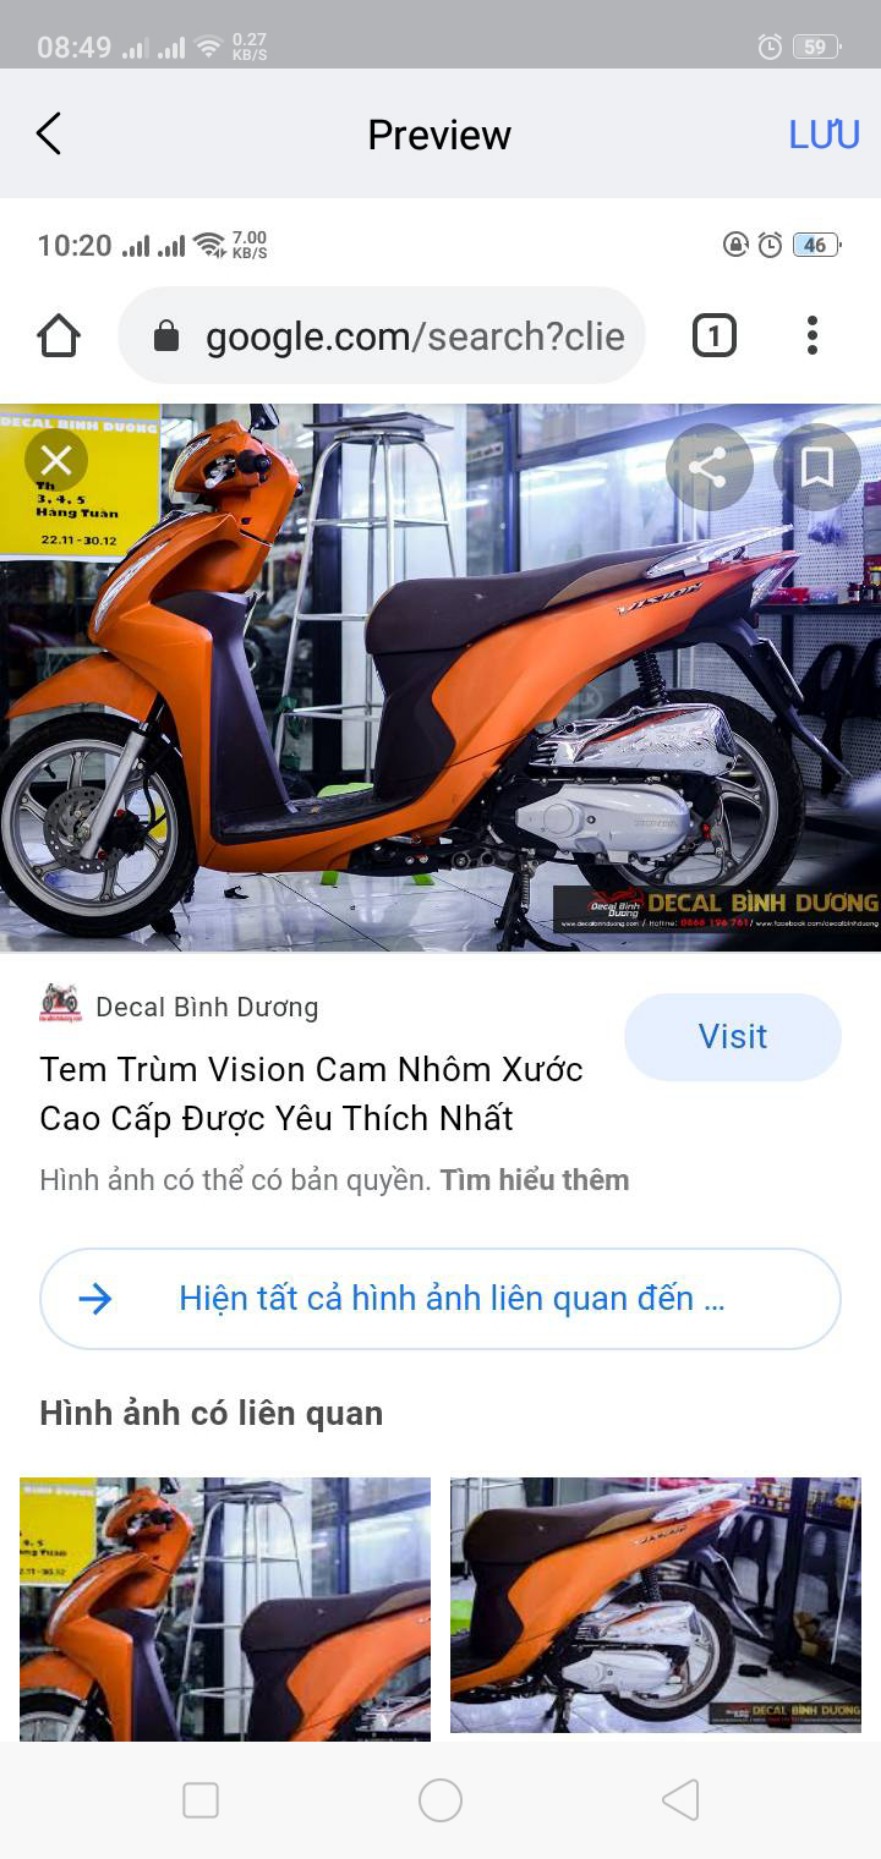 DÀN ÁO CHO XE MÁY HONDA VISION  Dàn nhựa xe máy Sài Gòn  Facebook